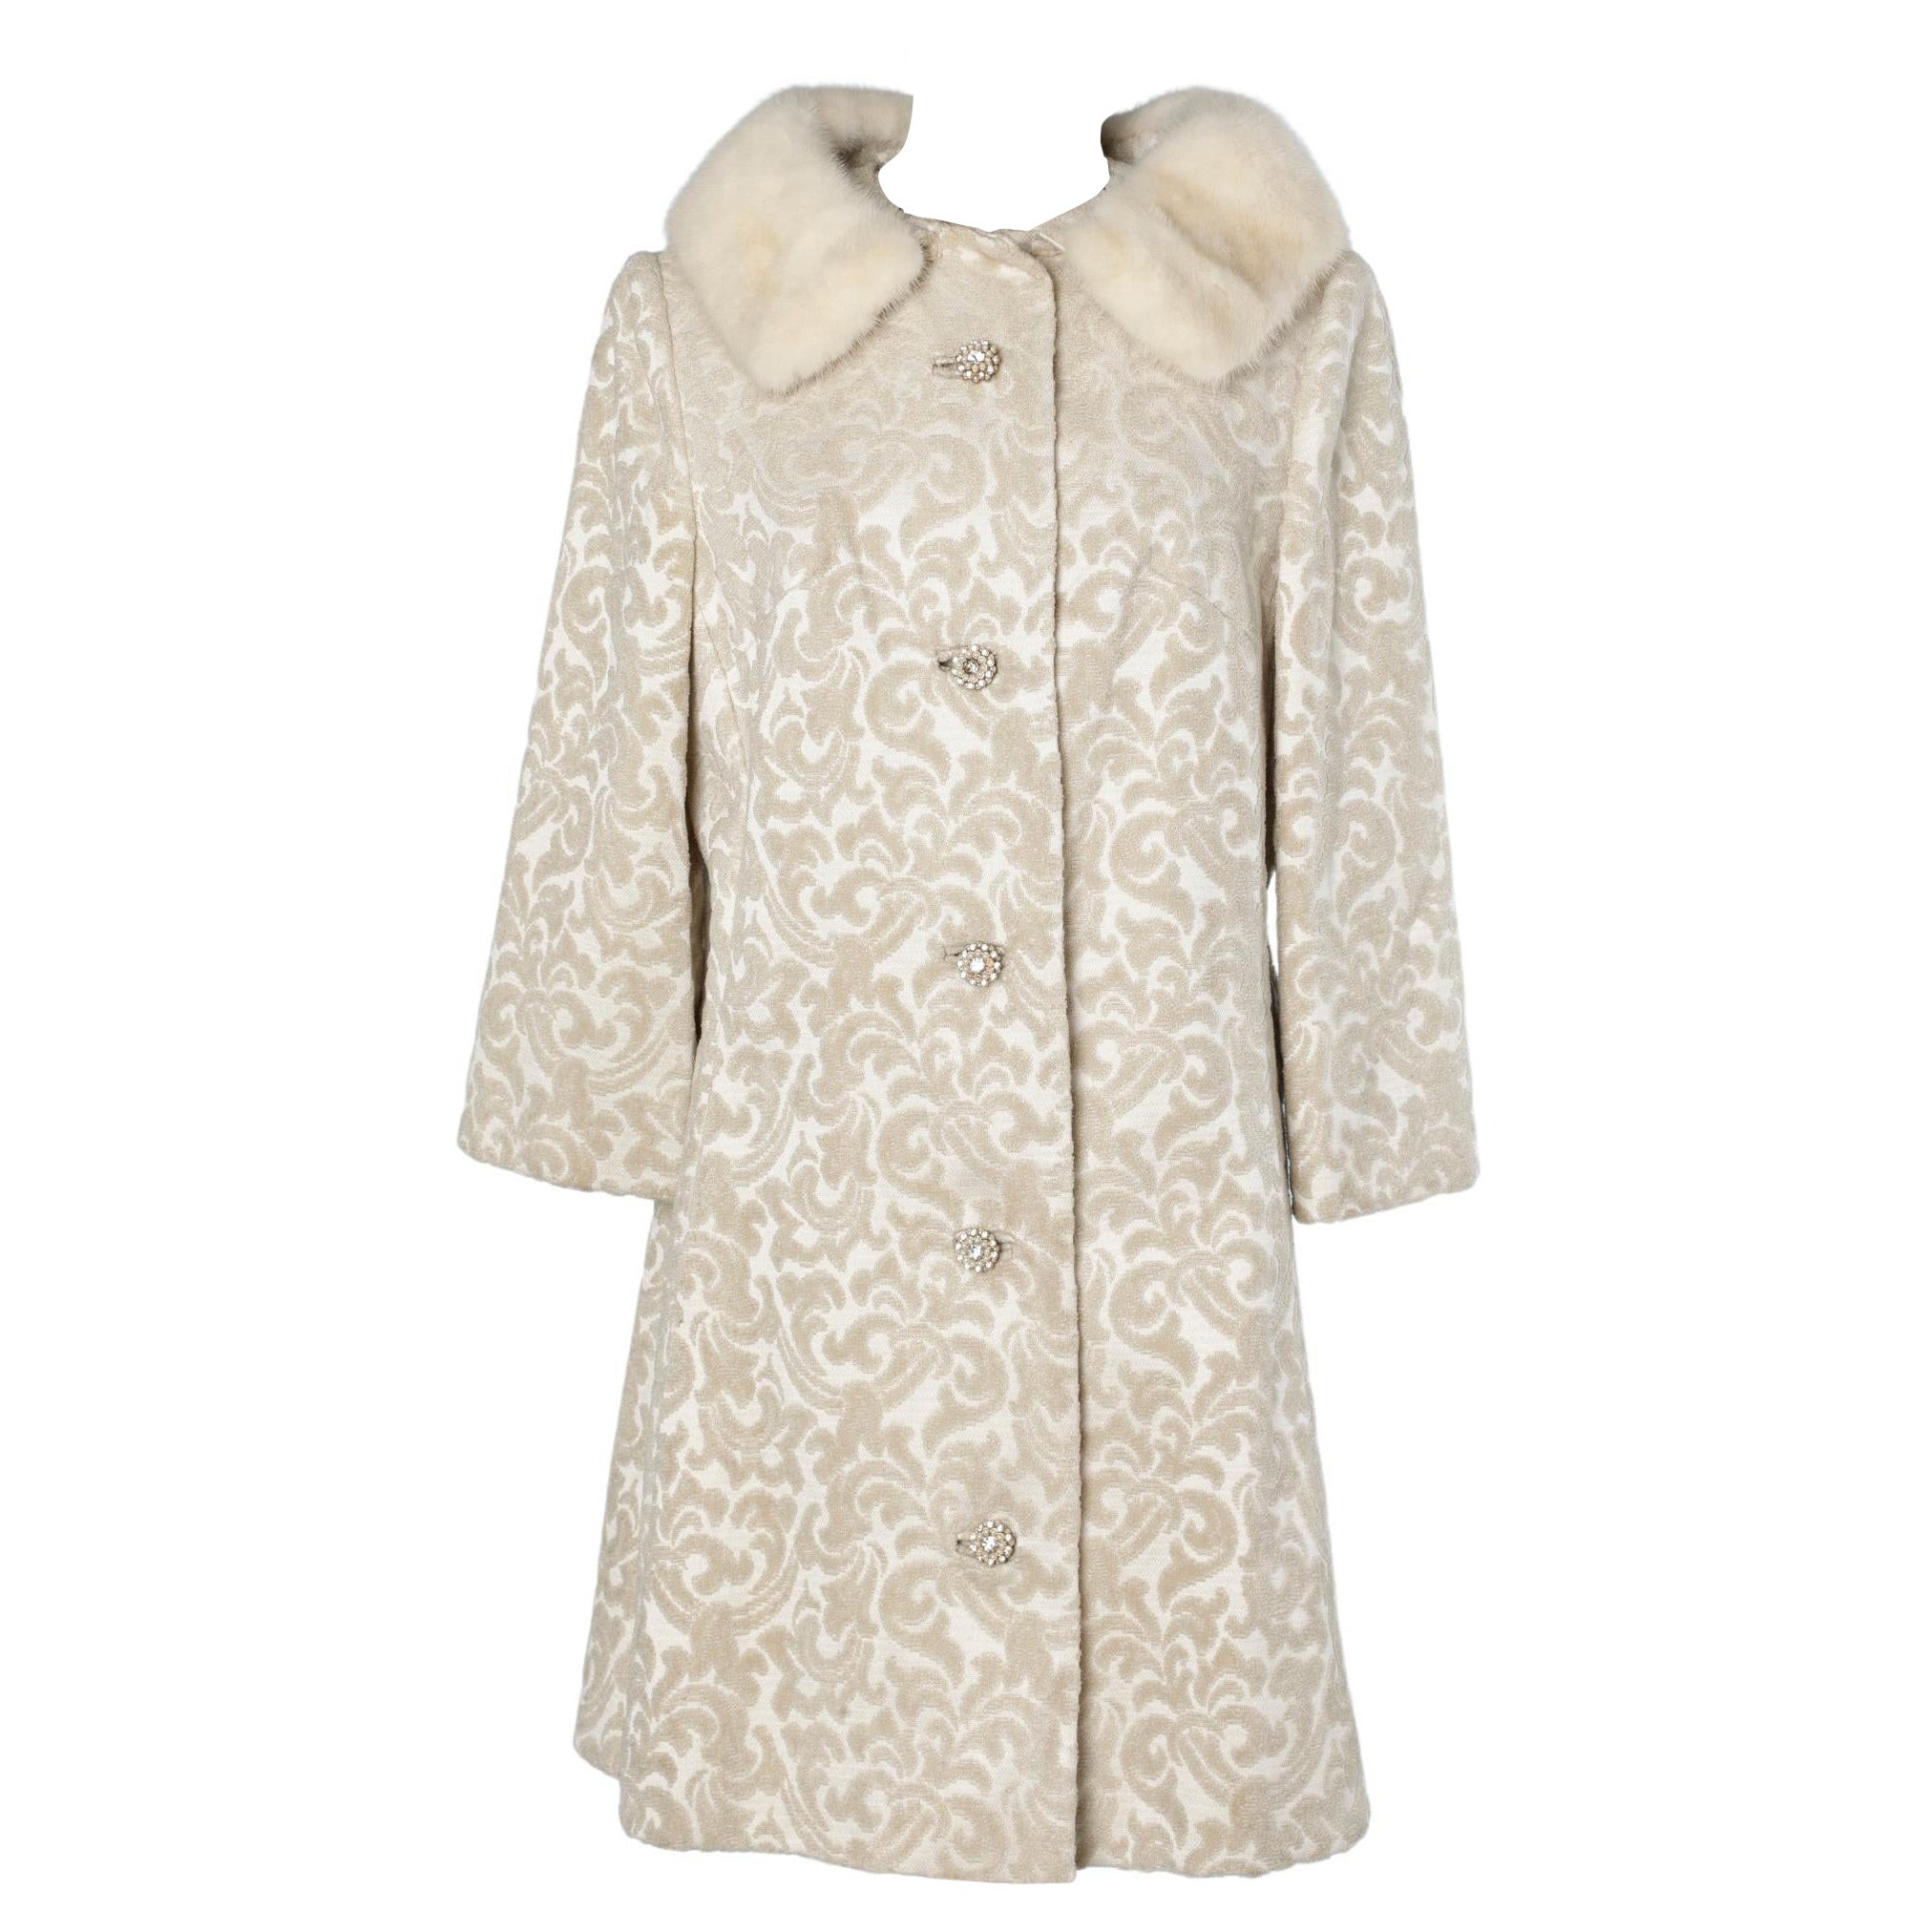 Off-white damasked velvet and mink coat Lilli Ann  For Sale